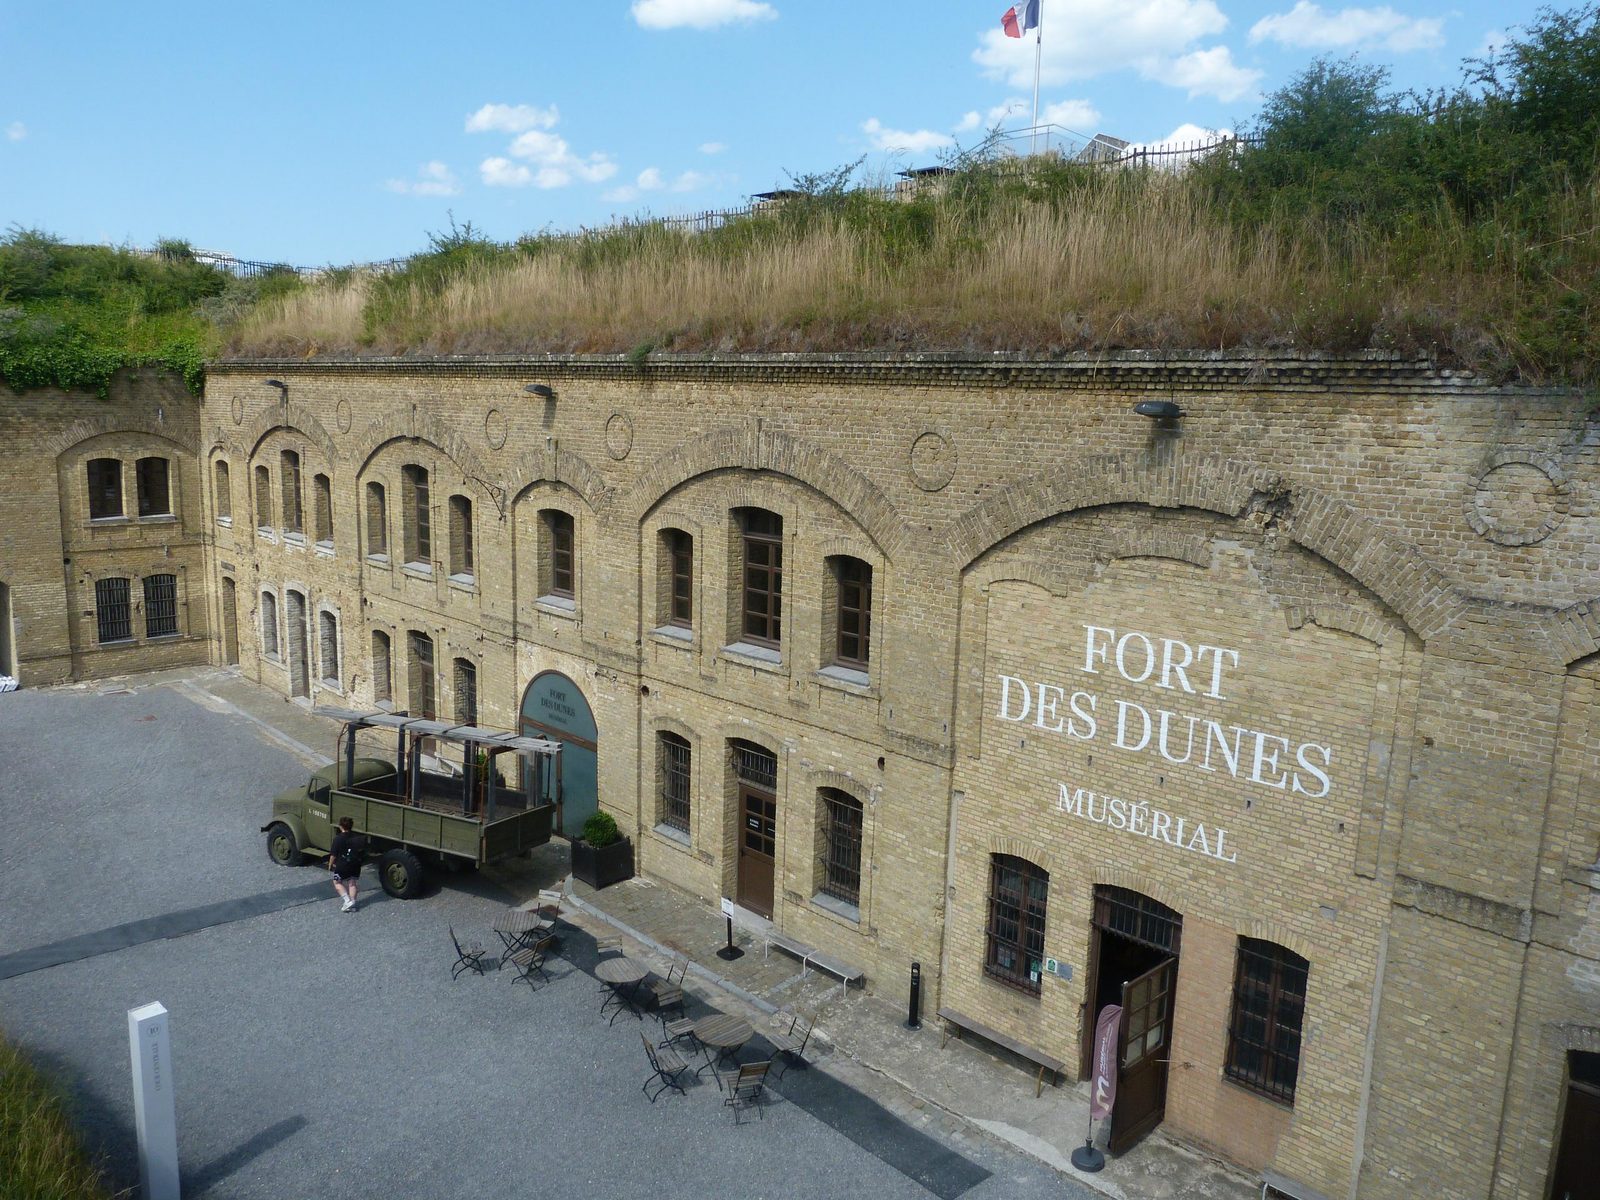 The fort of Leffrinckoucke